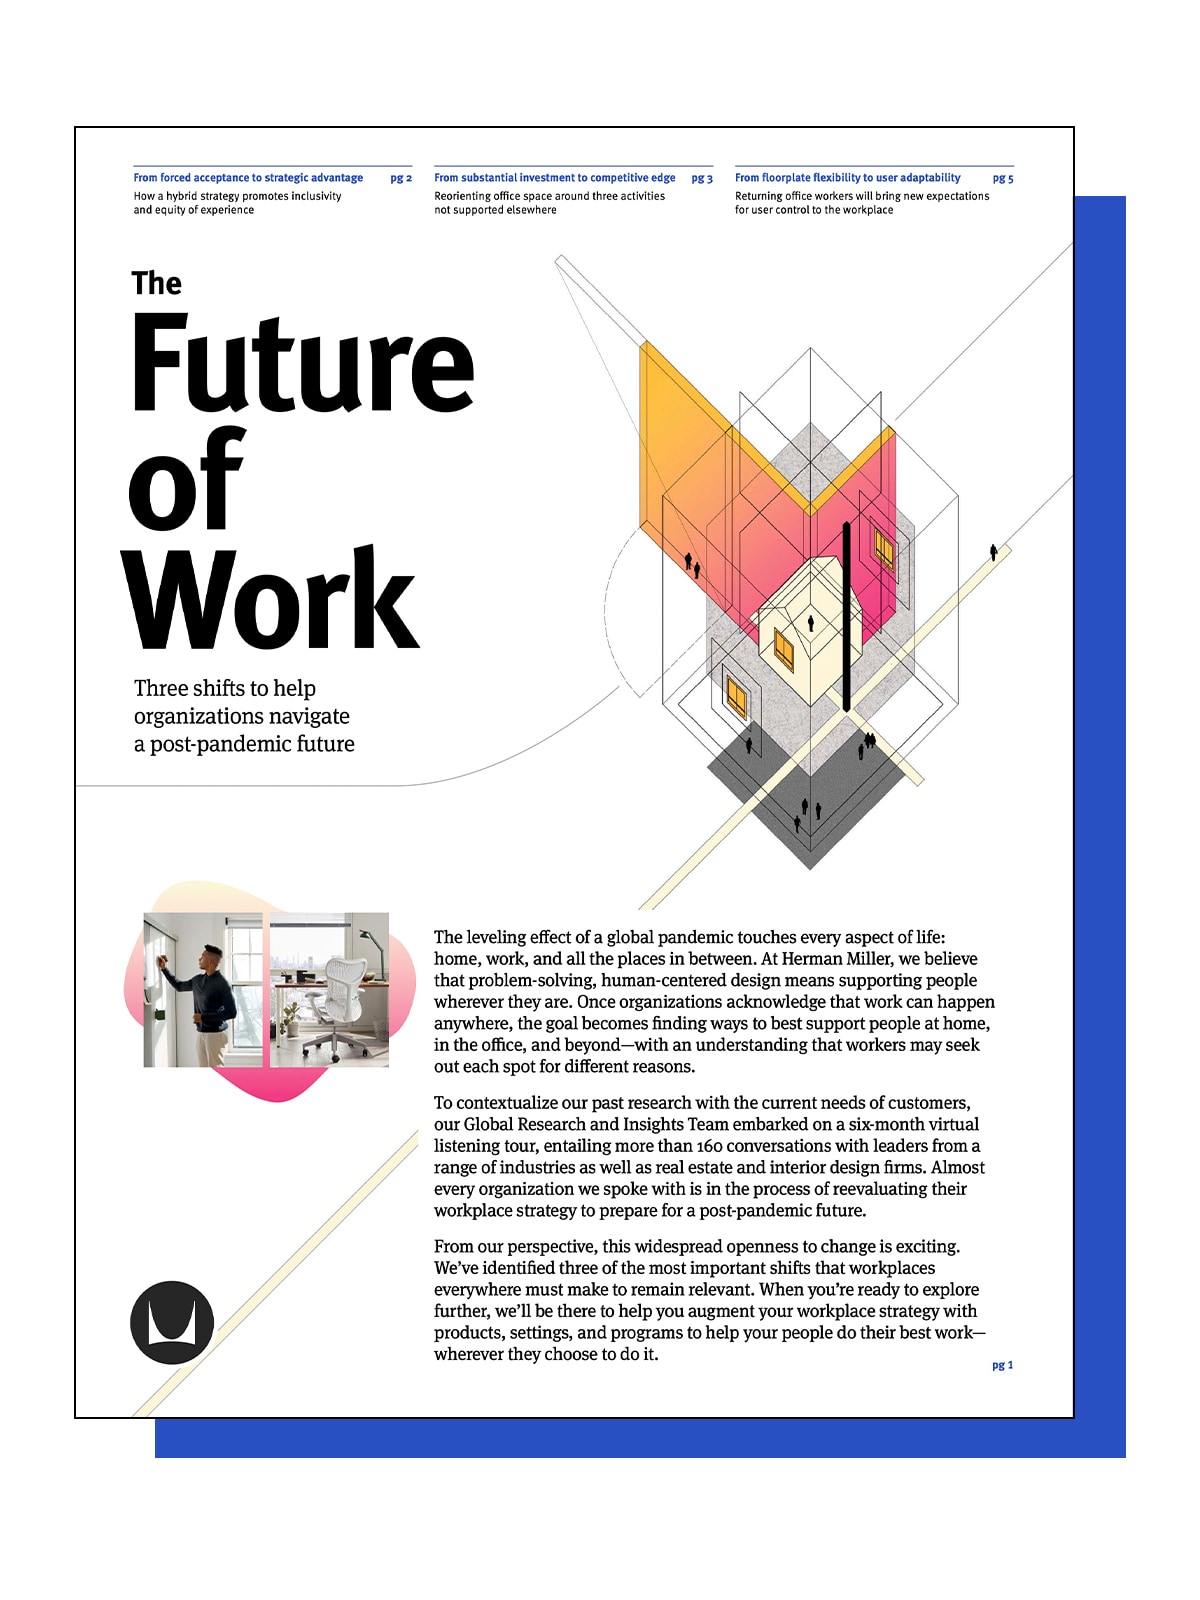 Imagen de portada del PDF para descargar del informe Futuro del trabajo: Anhelos.